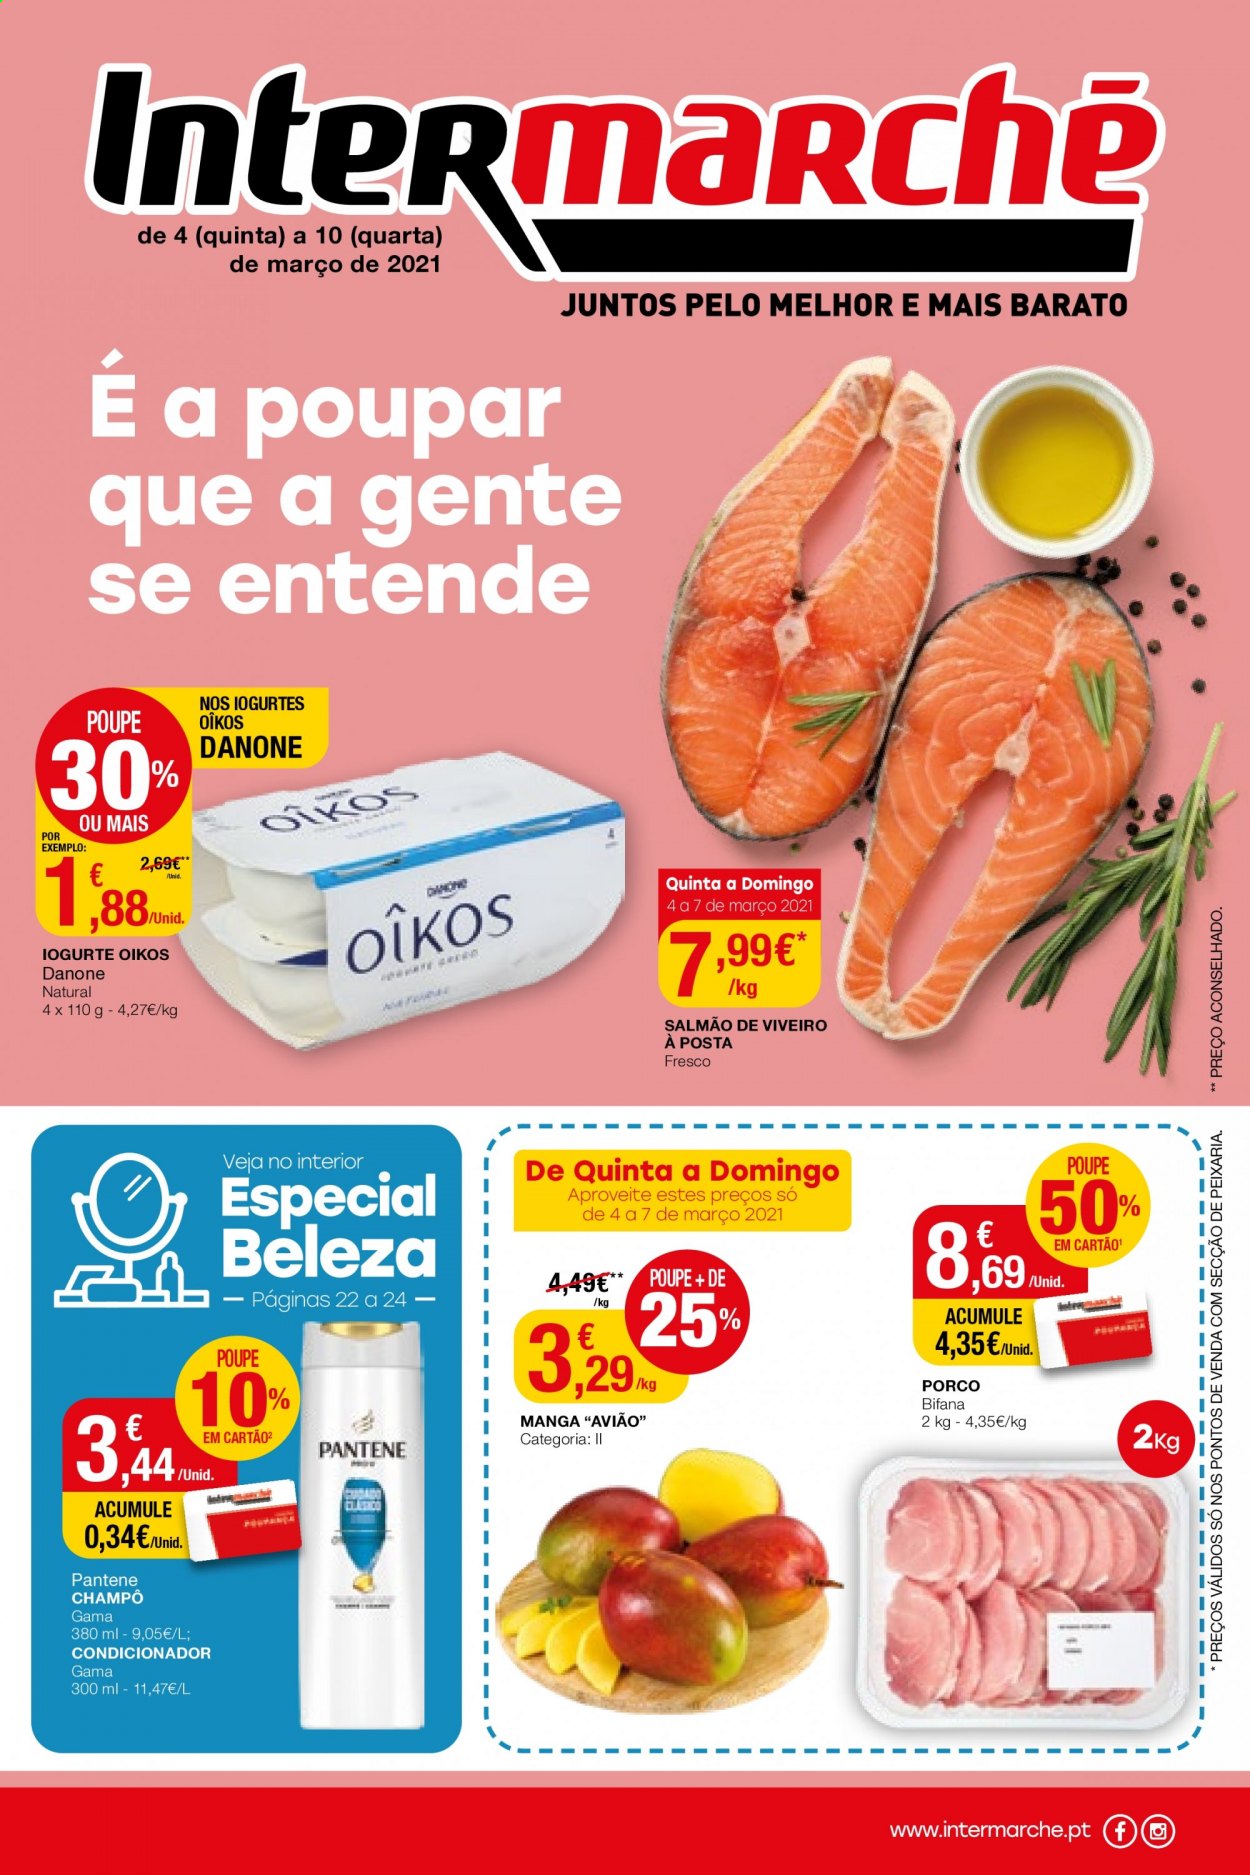 thumbnail - Folheto Intermarché - 4.3.2021 - 10.3.2021 - Produtos em promoção - salmão, iogurte, Danone, condicionador, Pantene. Página 1.